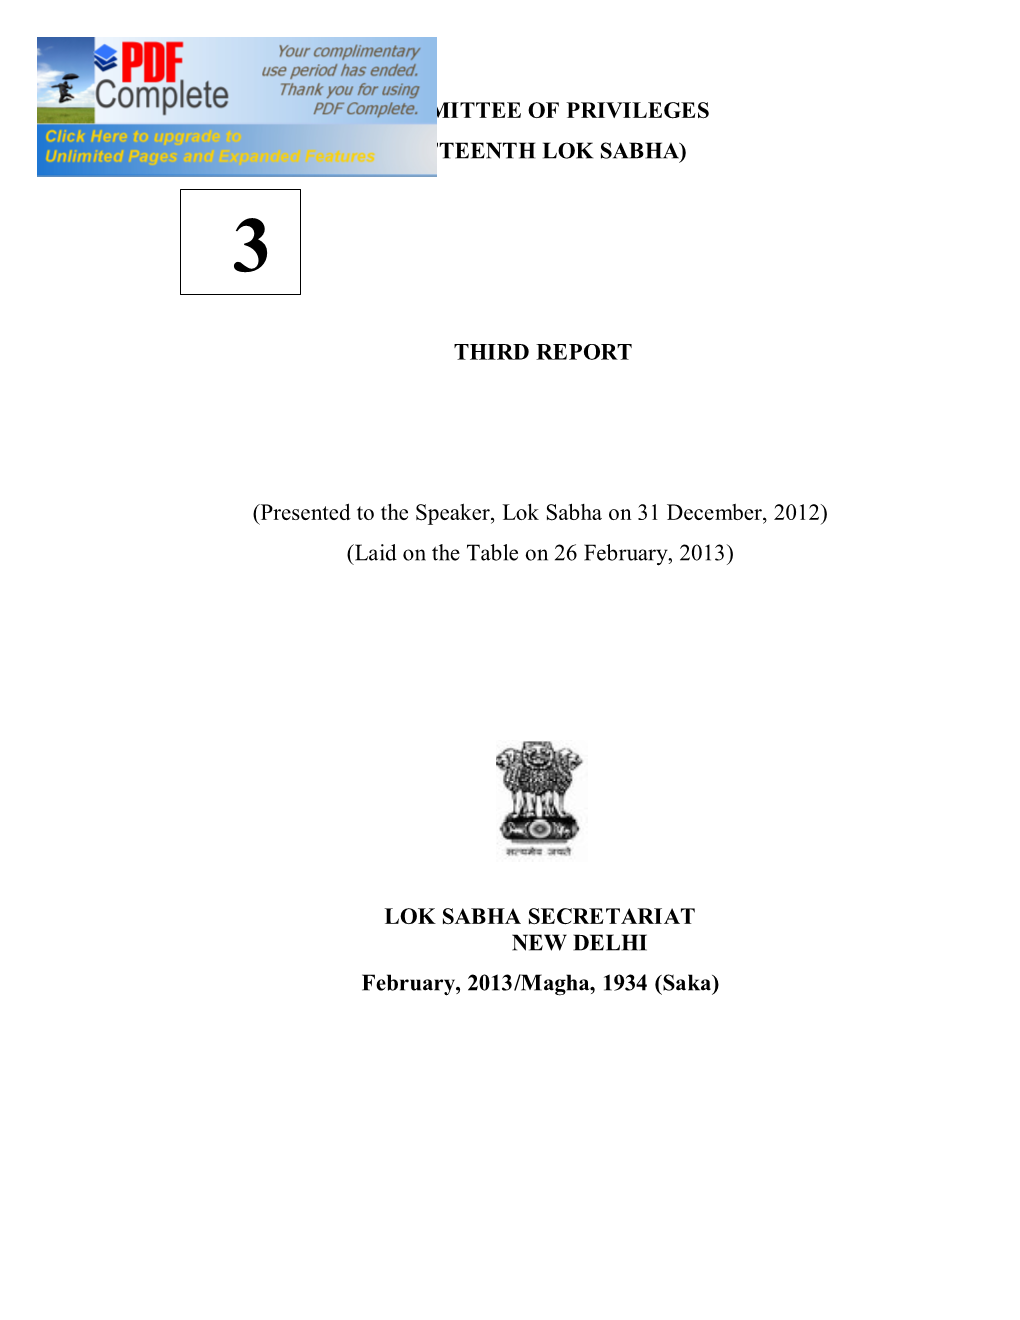 Committee of Privileges (Fifteenth Lok Sabha) Third